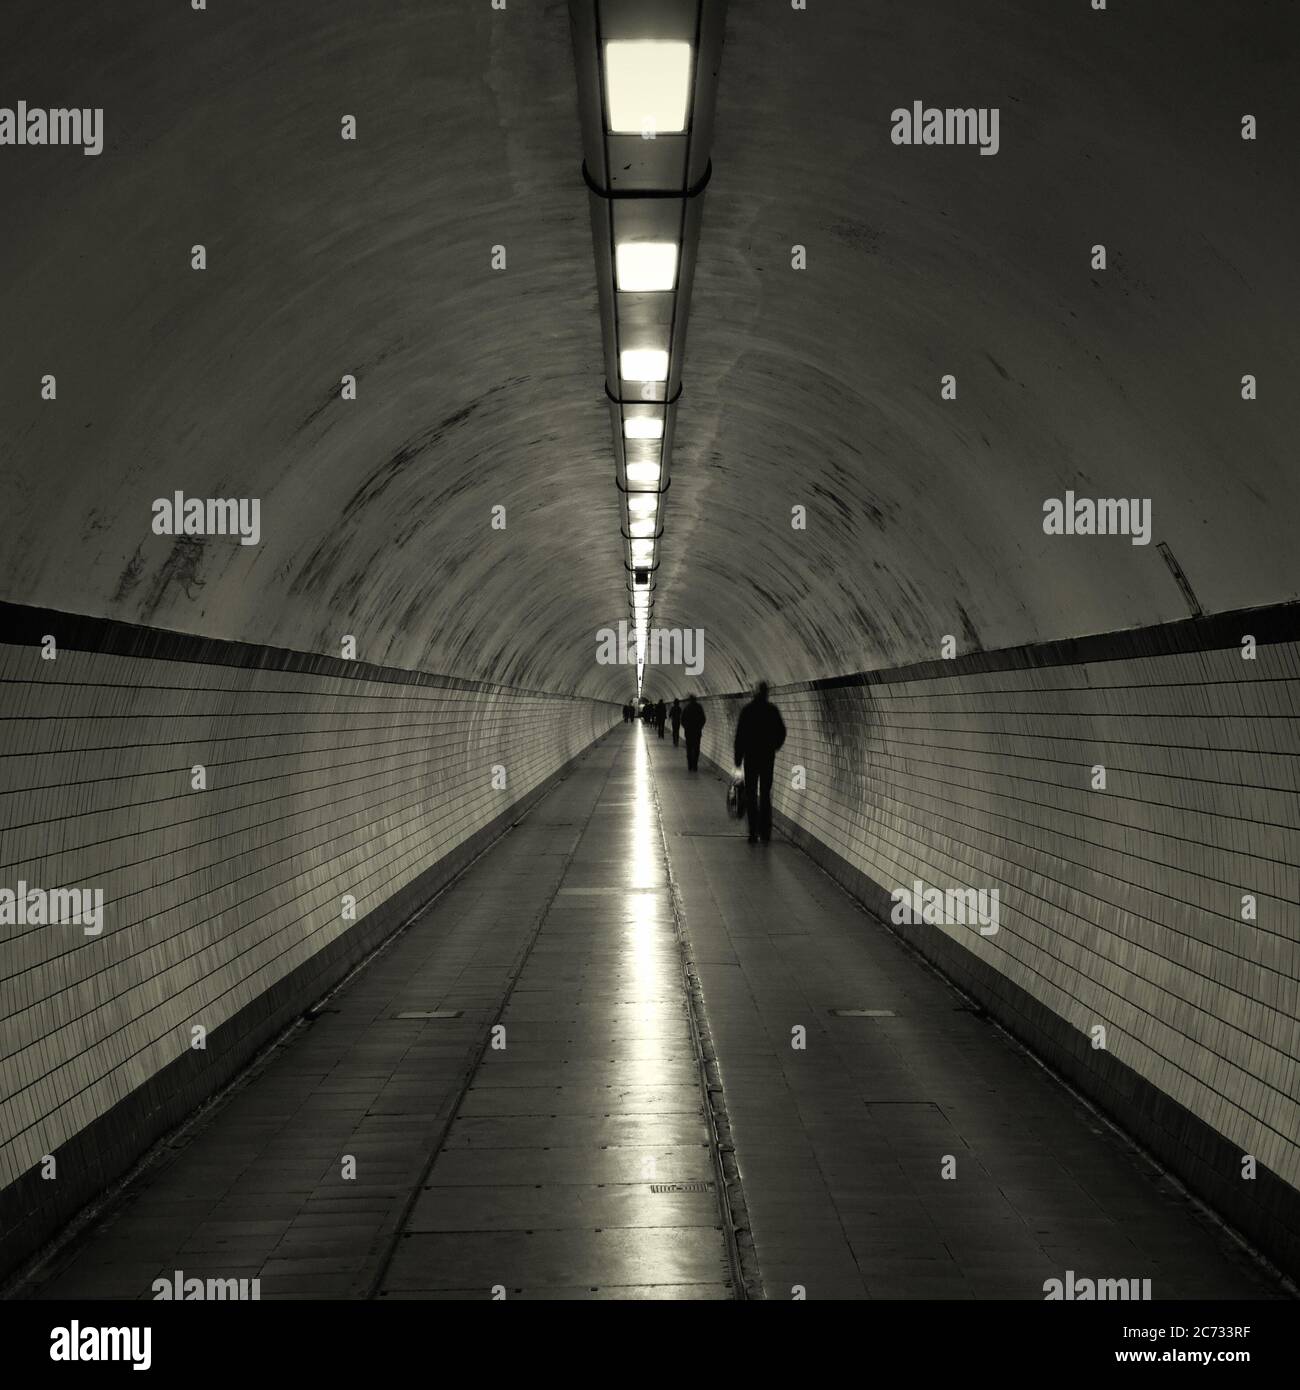 Voetgangerstunnel è un tunnel pedonale di Anversa (Anversa in fiammingo), sotto il fiume Schelda in Belgio. Foto Stock